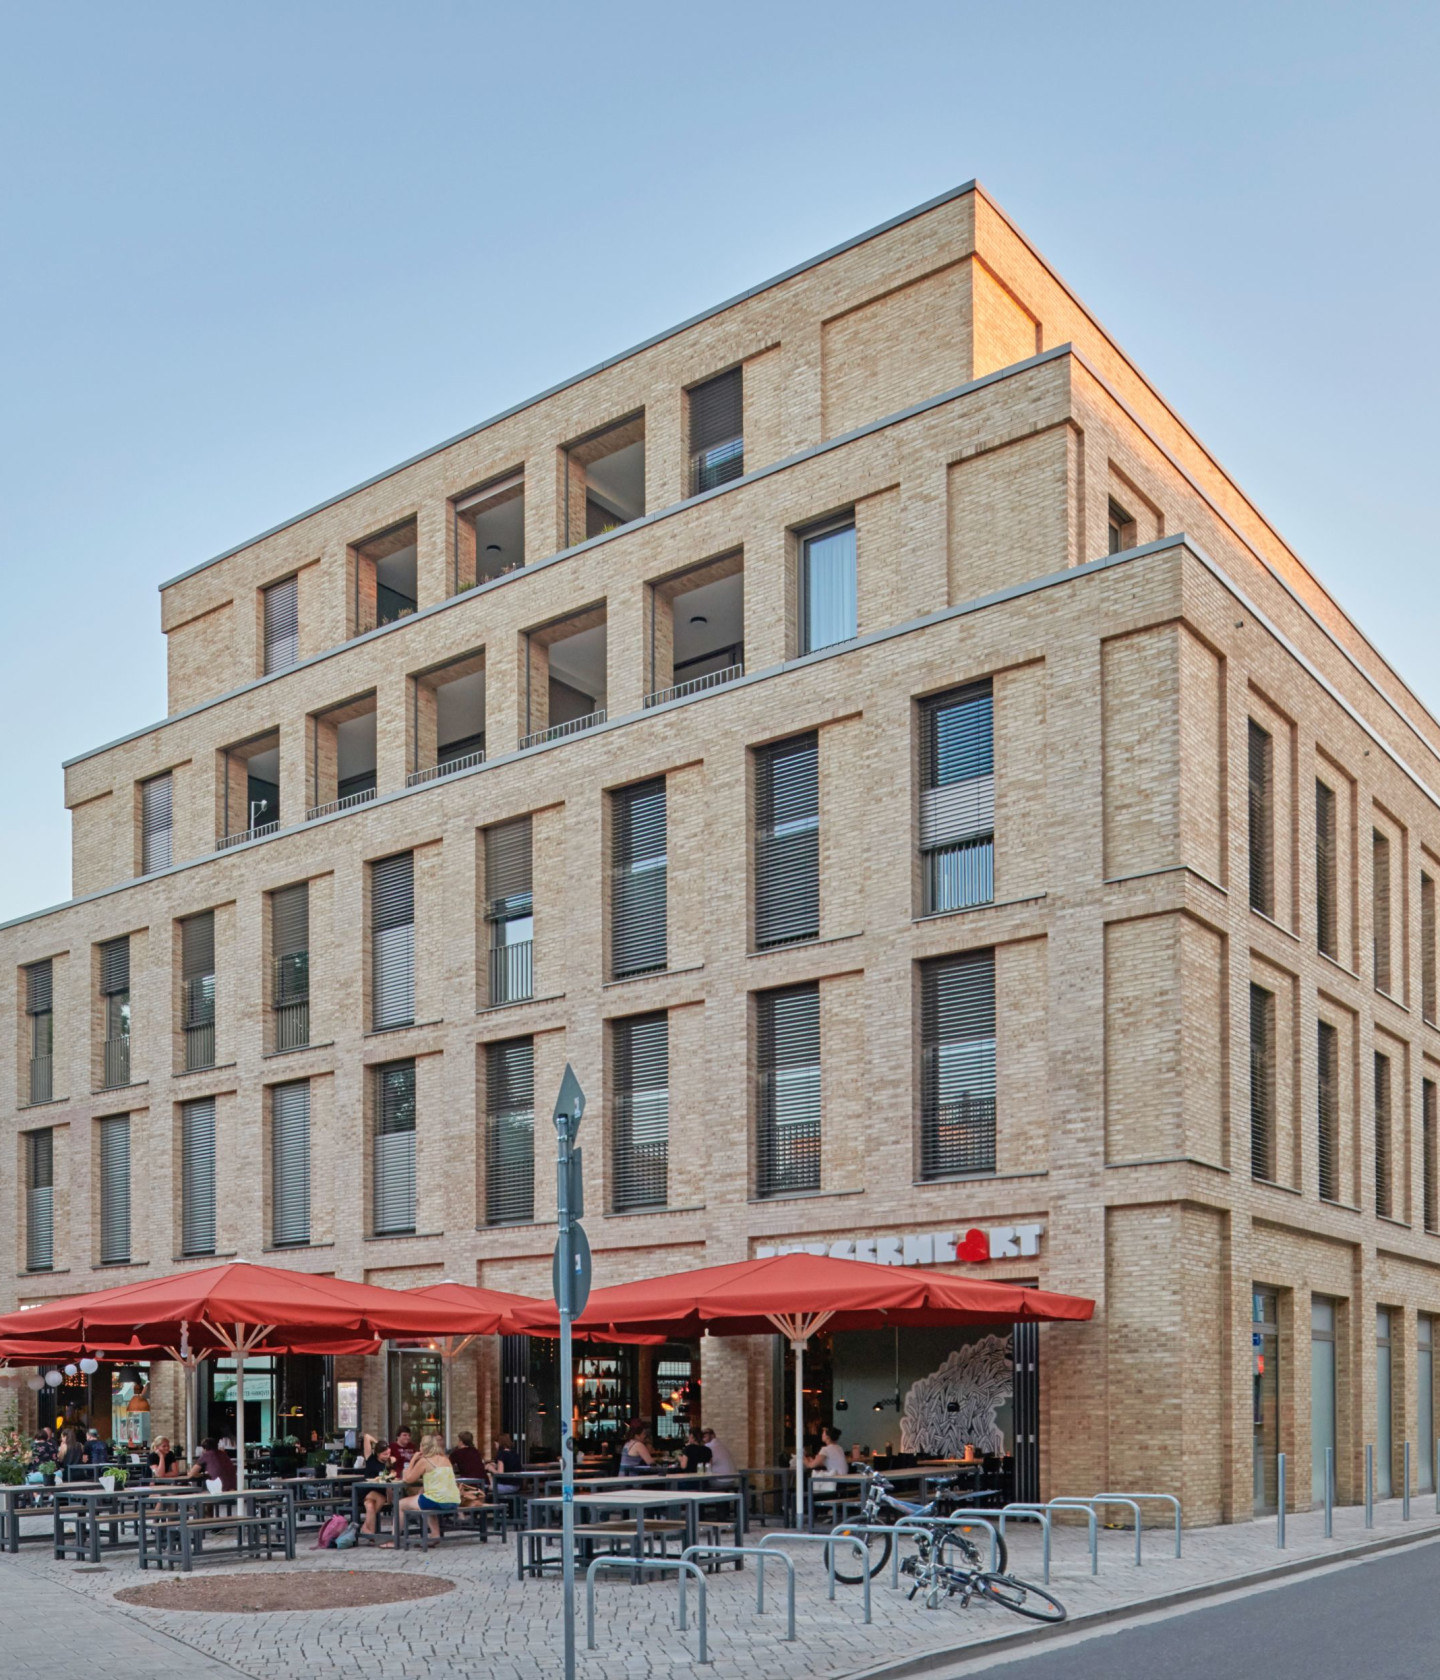 Obrázok: Budova MARQ na námestí Marstallplatz v Hannoveri s vonkajšími reštauráciami.